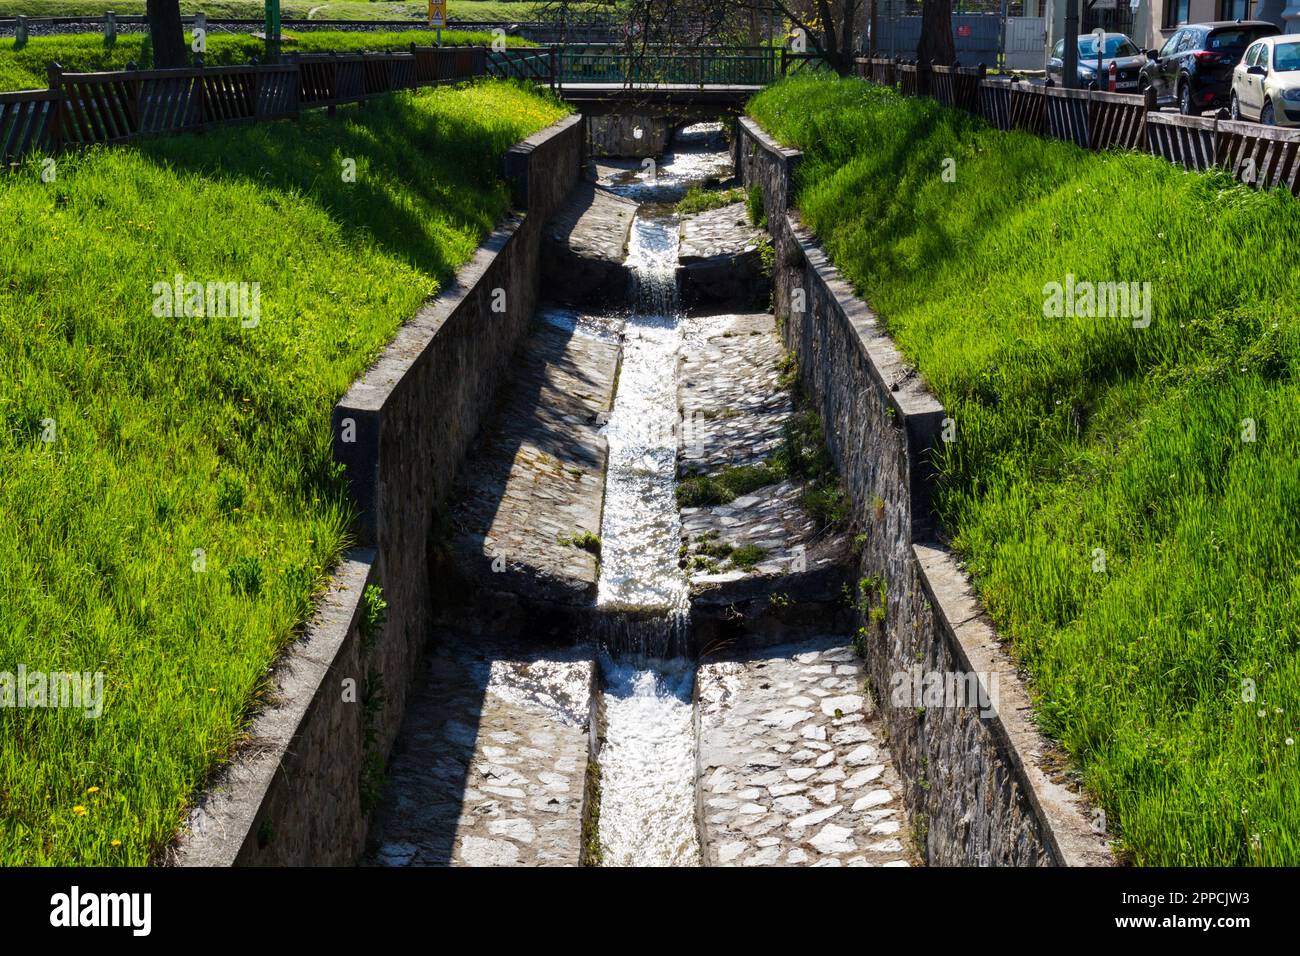 Cama artificial de piedra de Brook Rak con agua que fluye, Sopron, Hungría Foto de stock